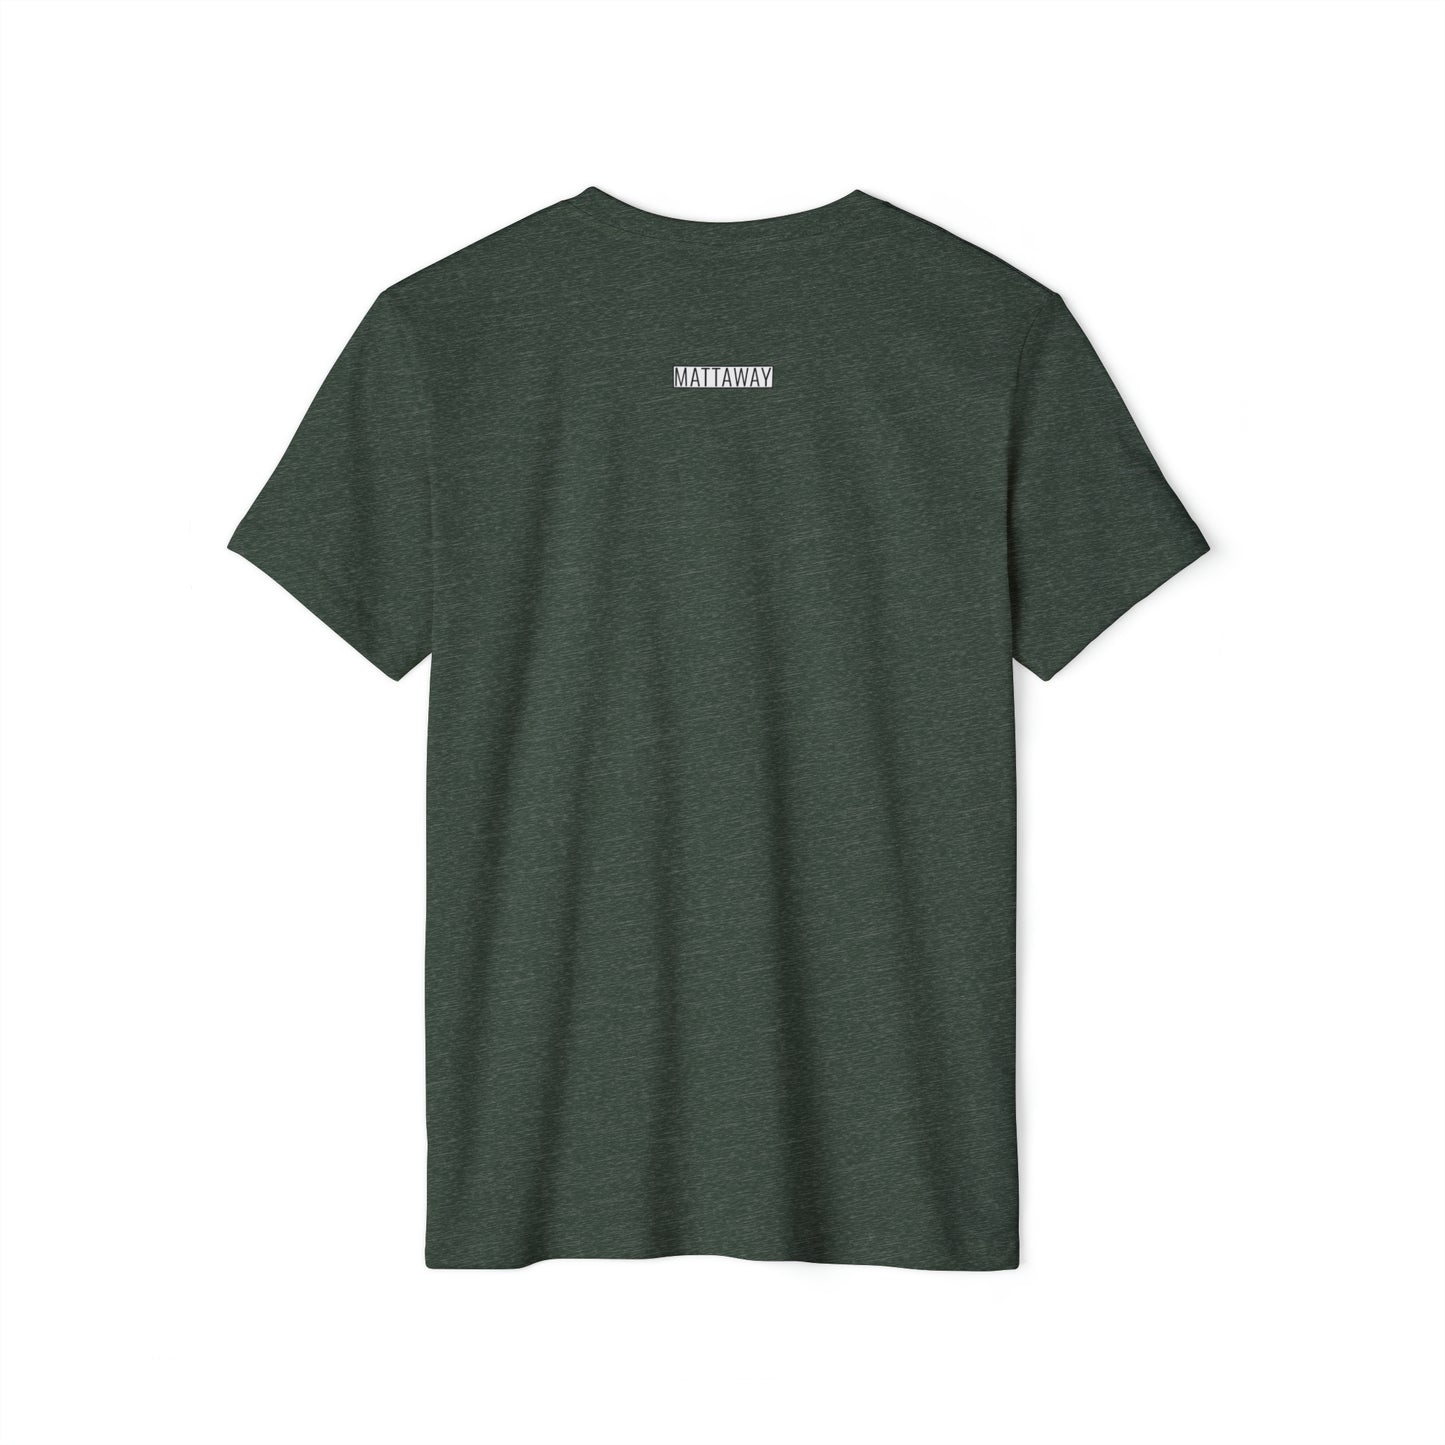 MINIMAL SHAPES 103 - Unisex Recycled Organic T-Shirt